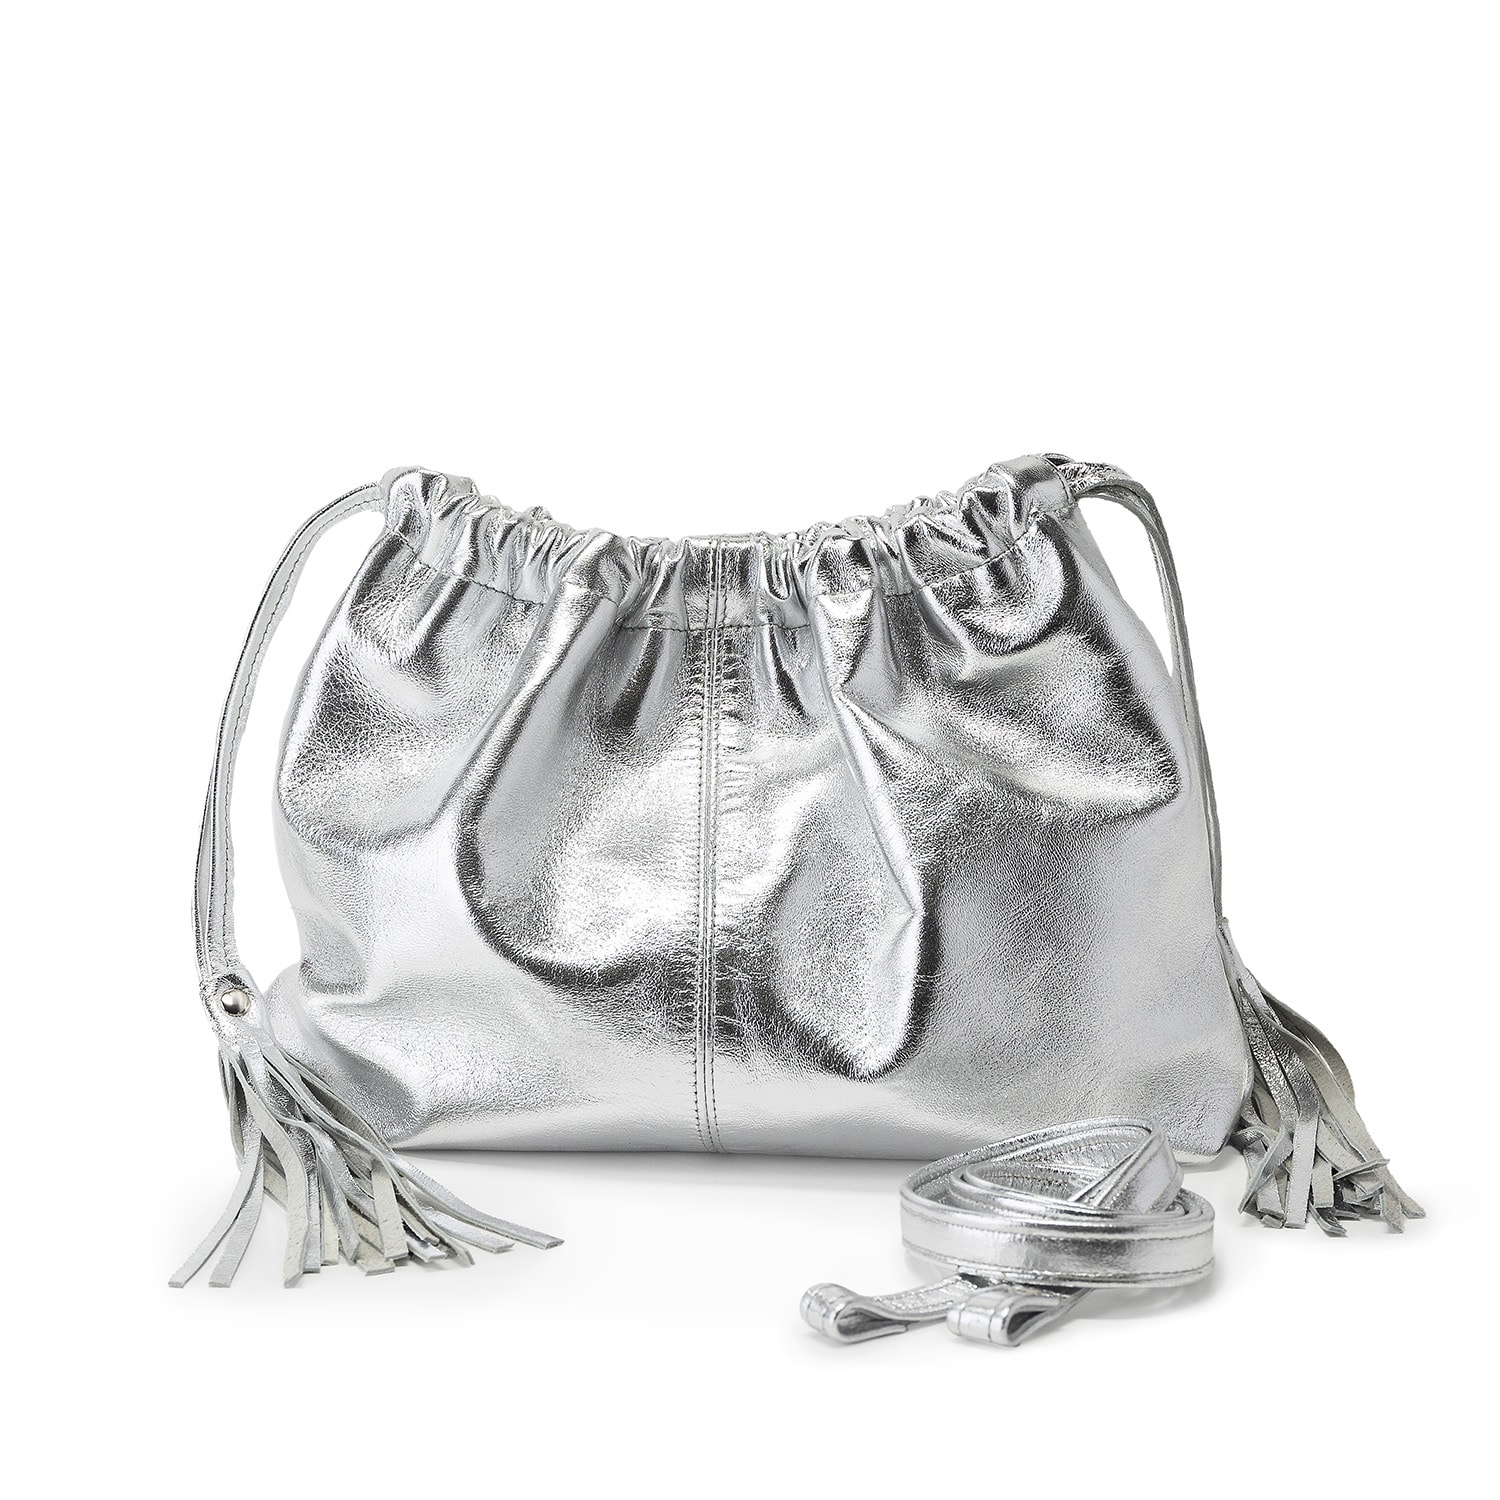 Women’s Silver Leather Clutch Bag With Tassels Juan-Jo